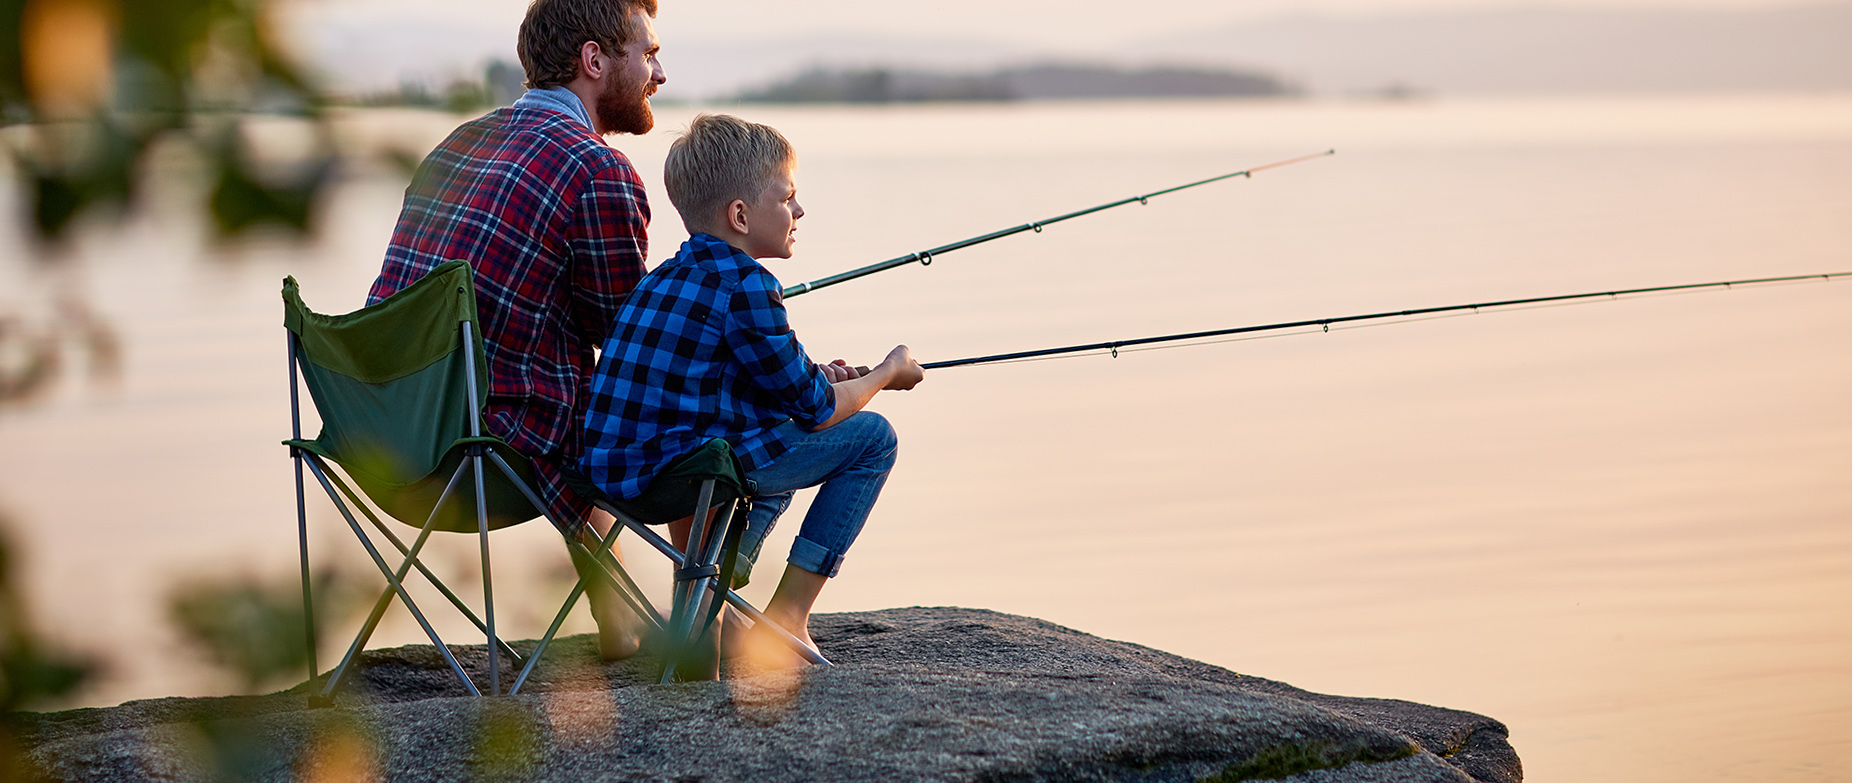 Mies ja poika kalastamassa rantakalliolla ilta-auringossa.